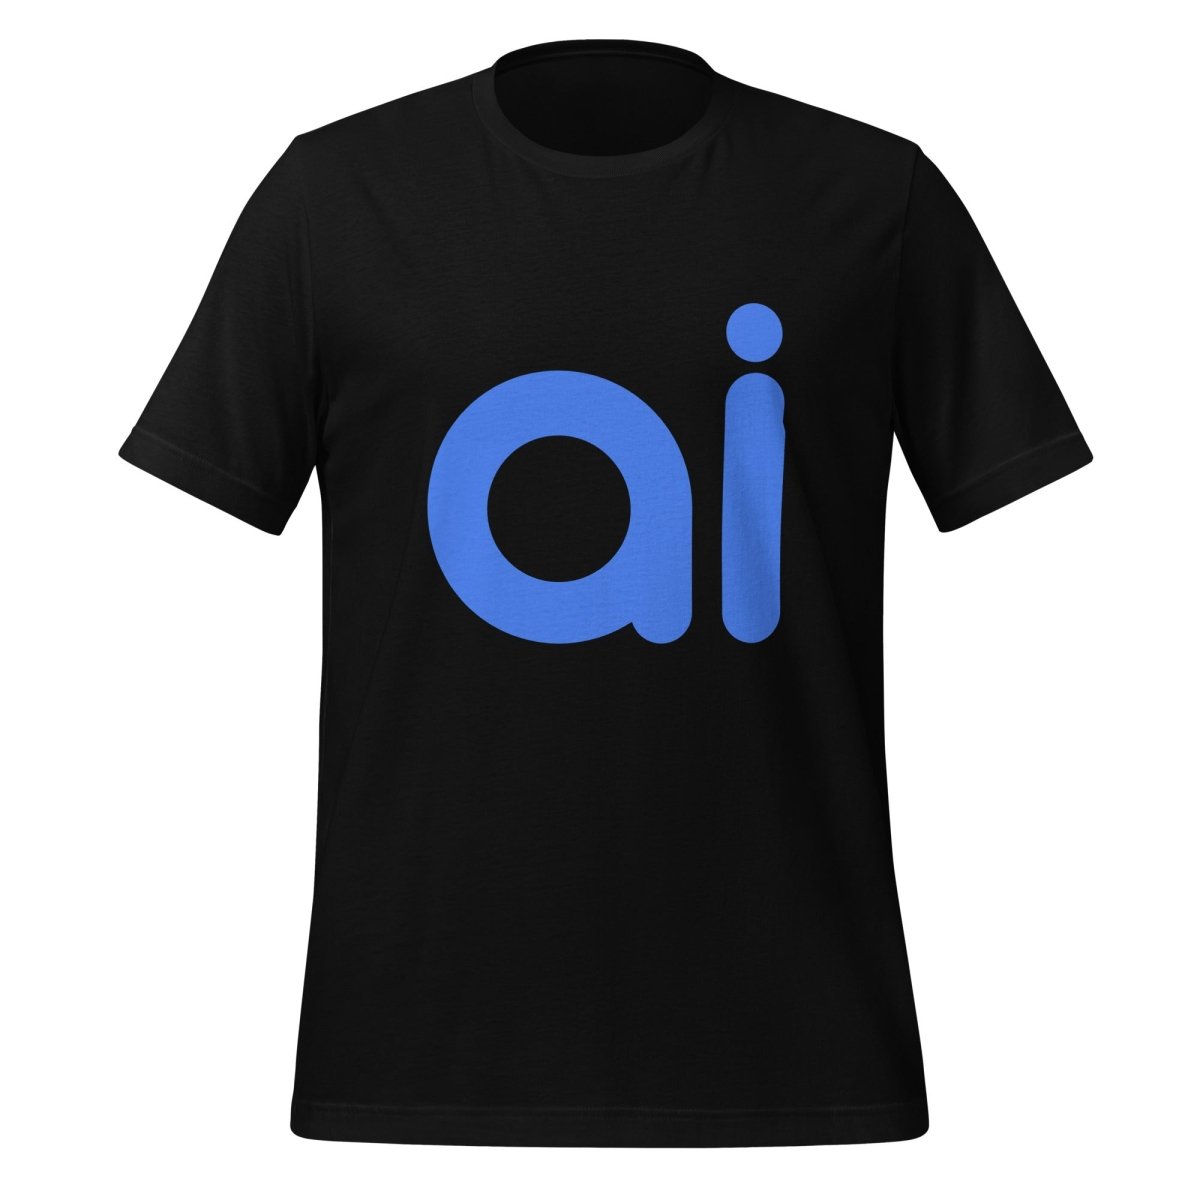 ai T - Shirt (unisex) - Black - AI Store